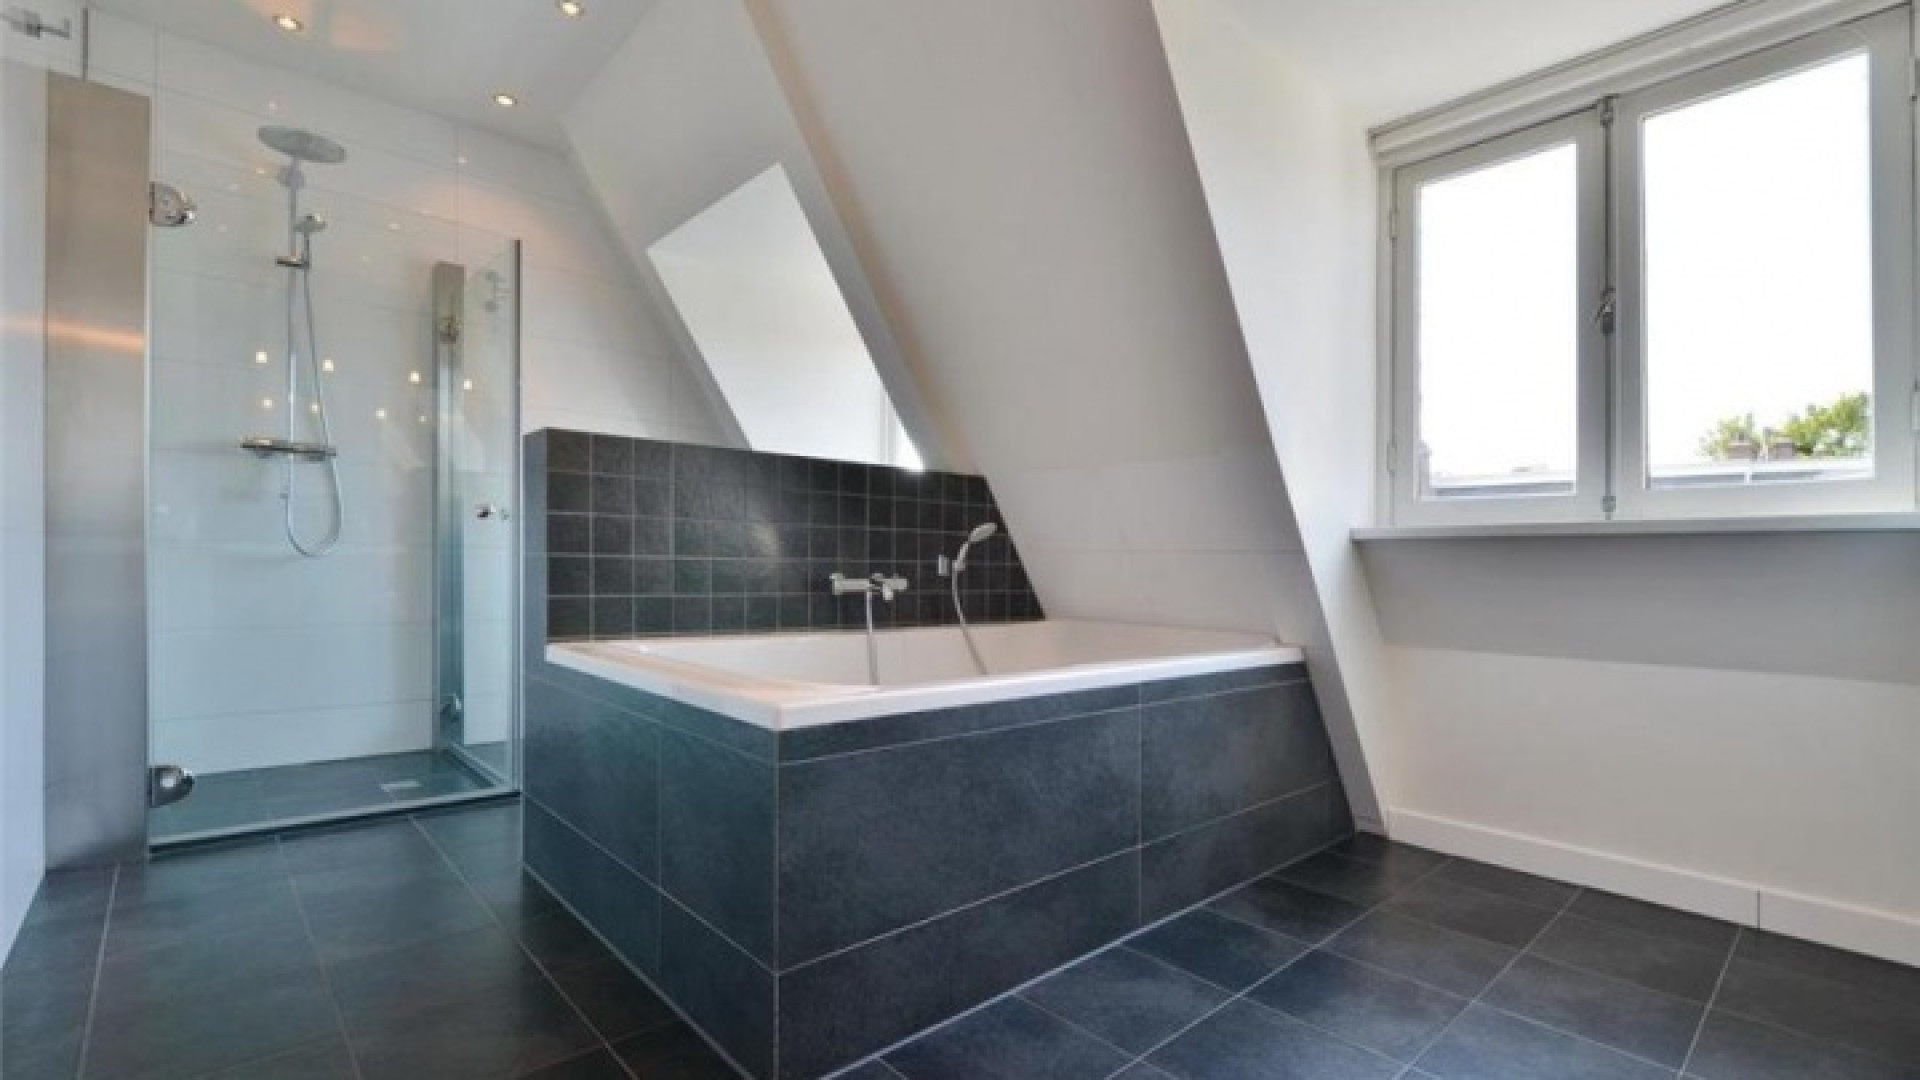 Frank Rijkaard zoekt huurder voor zijn luxe dubbele bovenhuis. Zie foto's 22